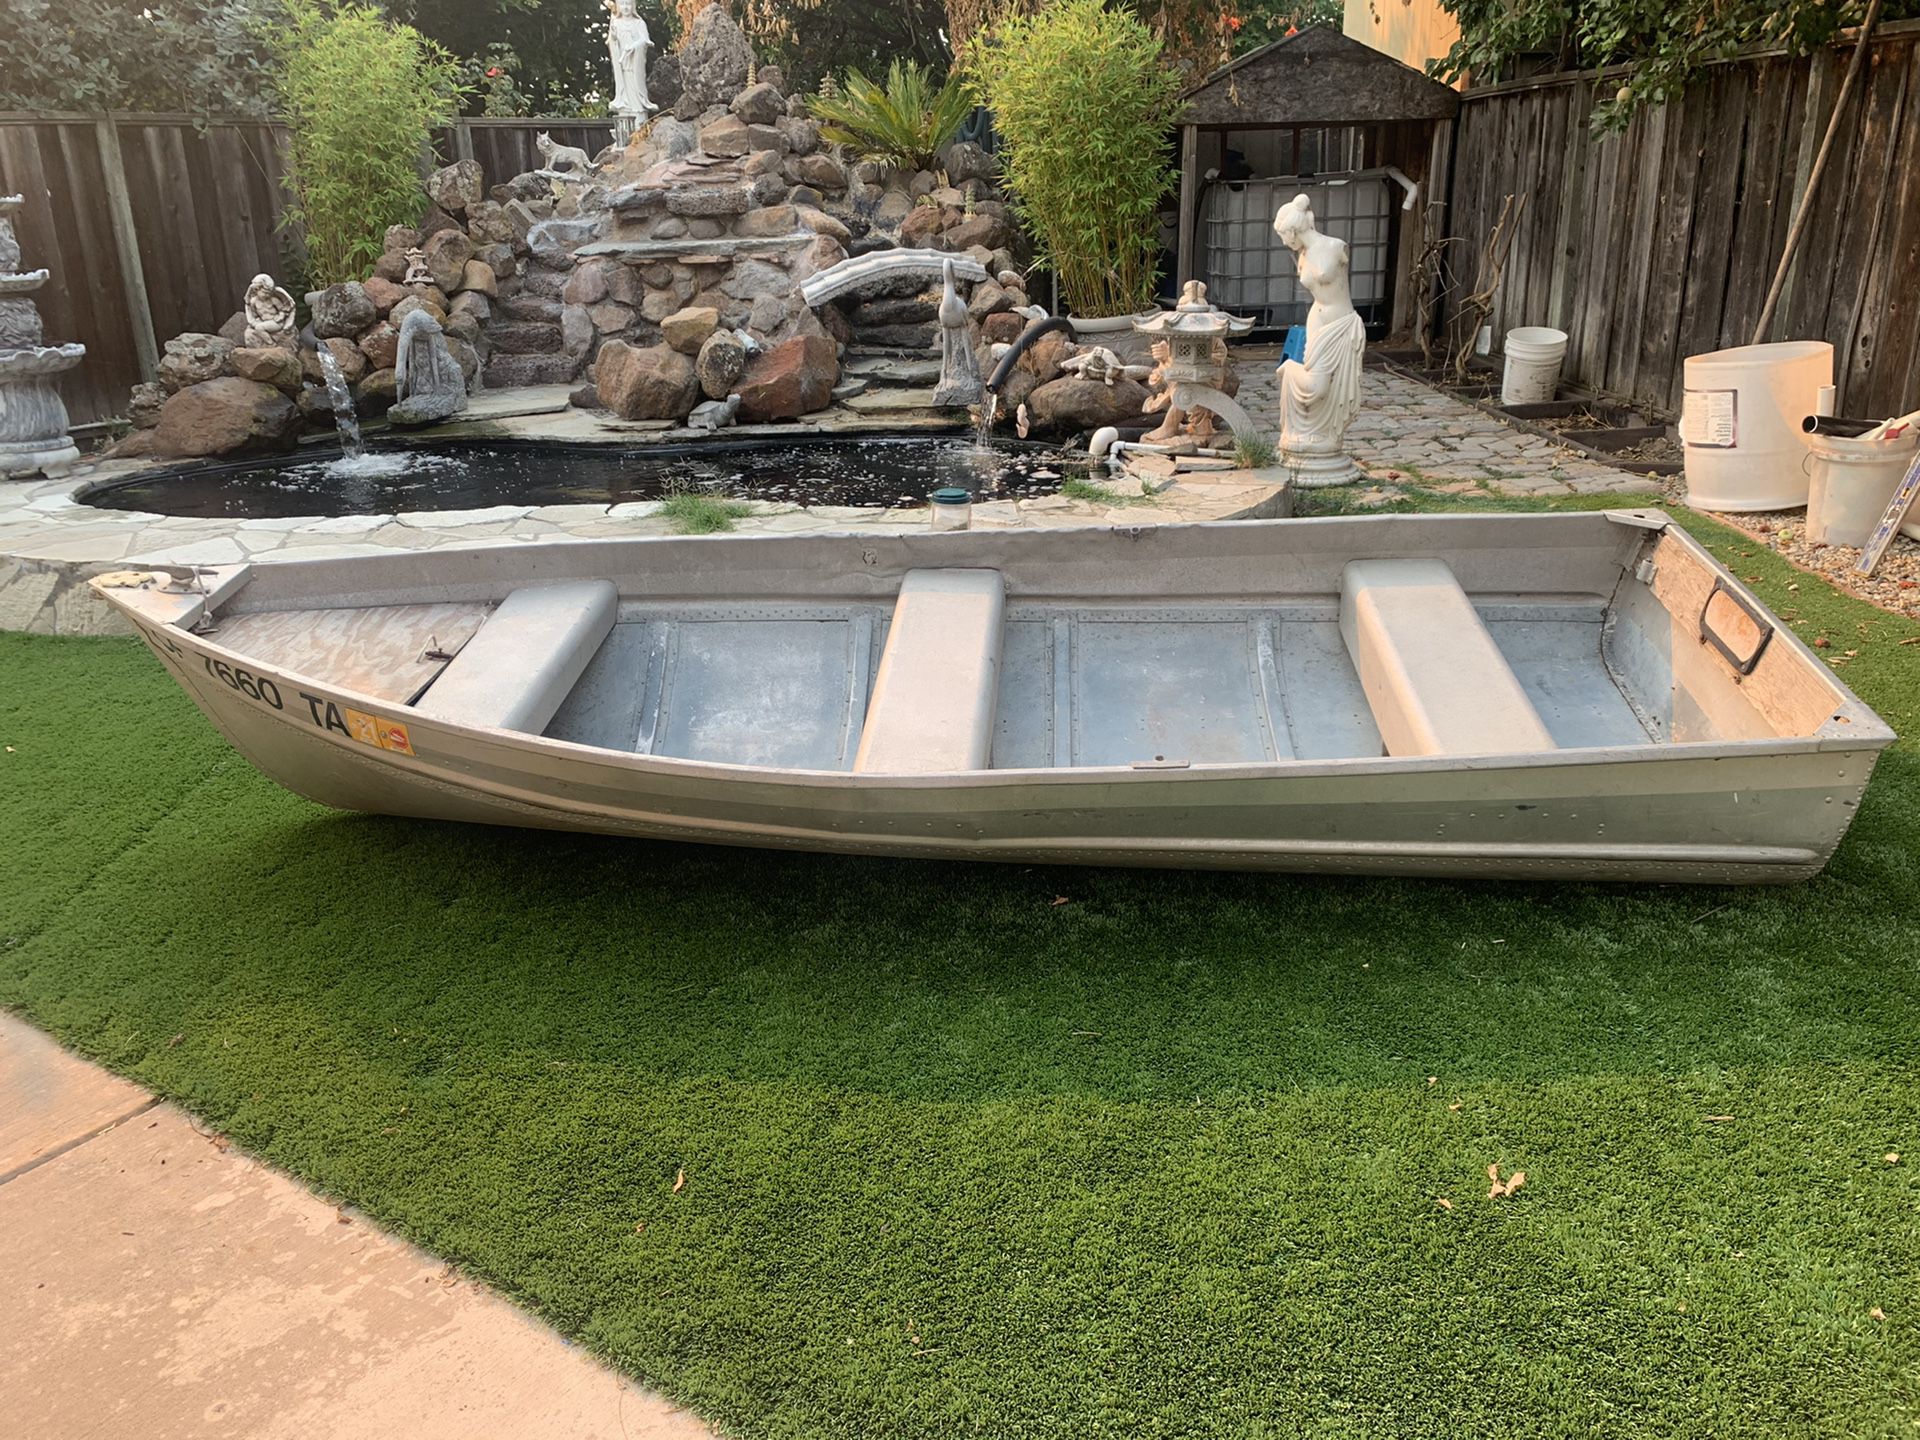 12 foot aluminum boat